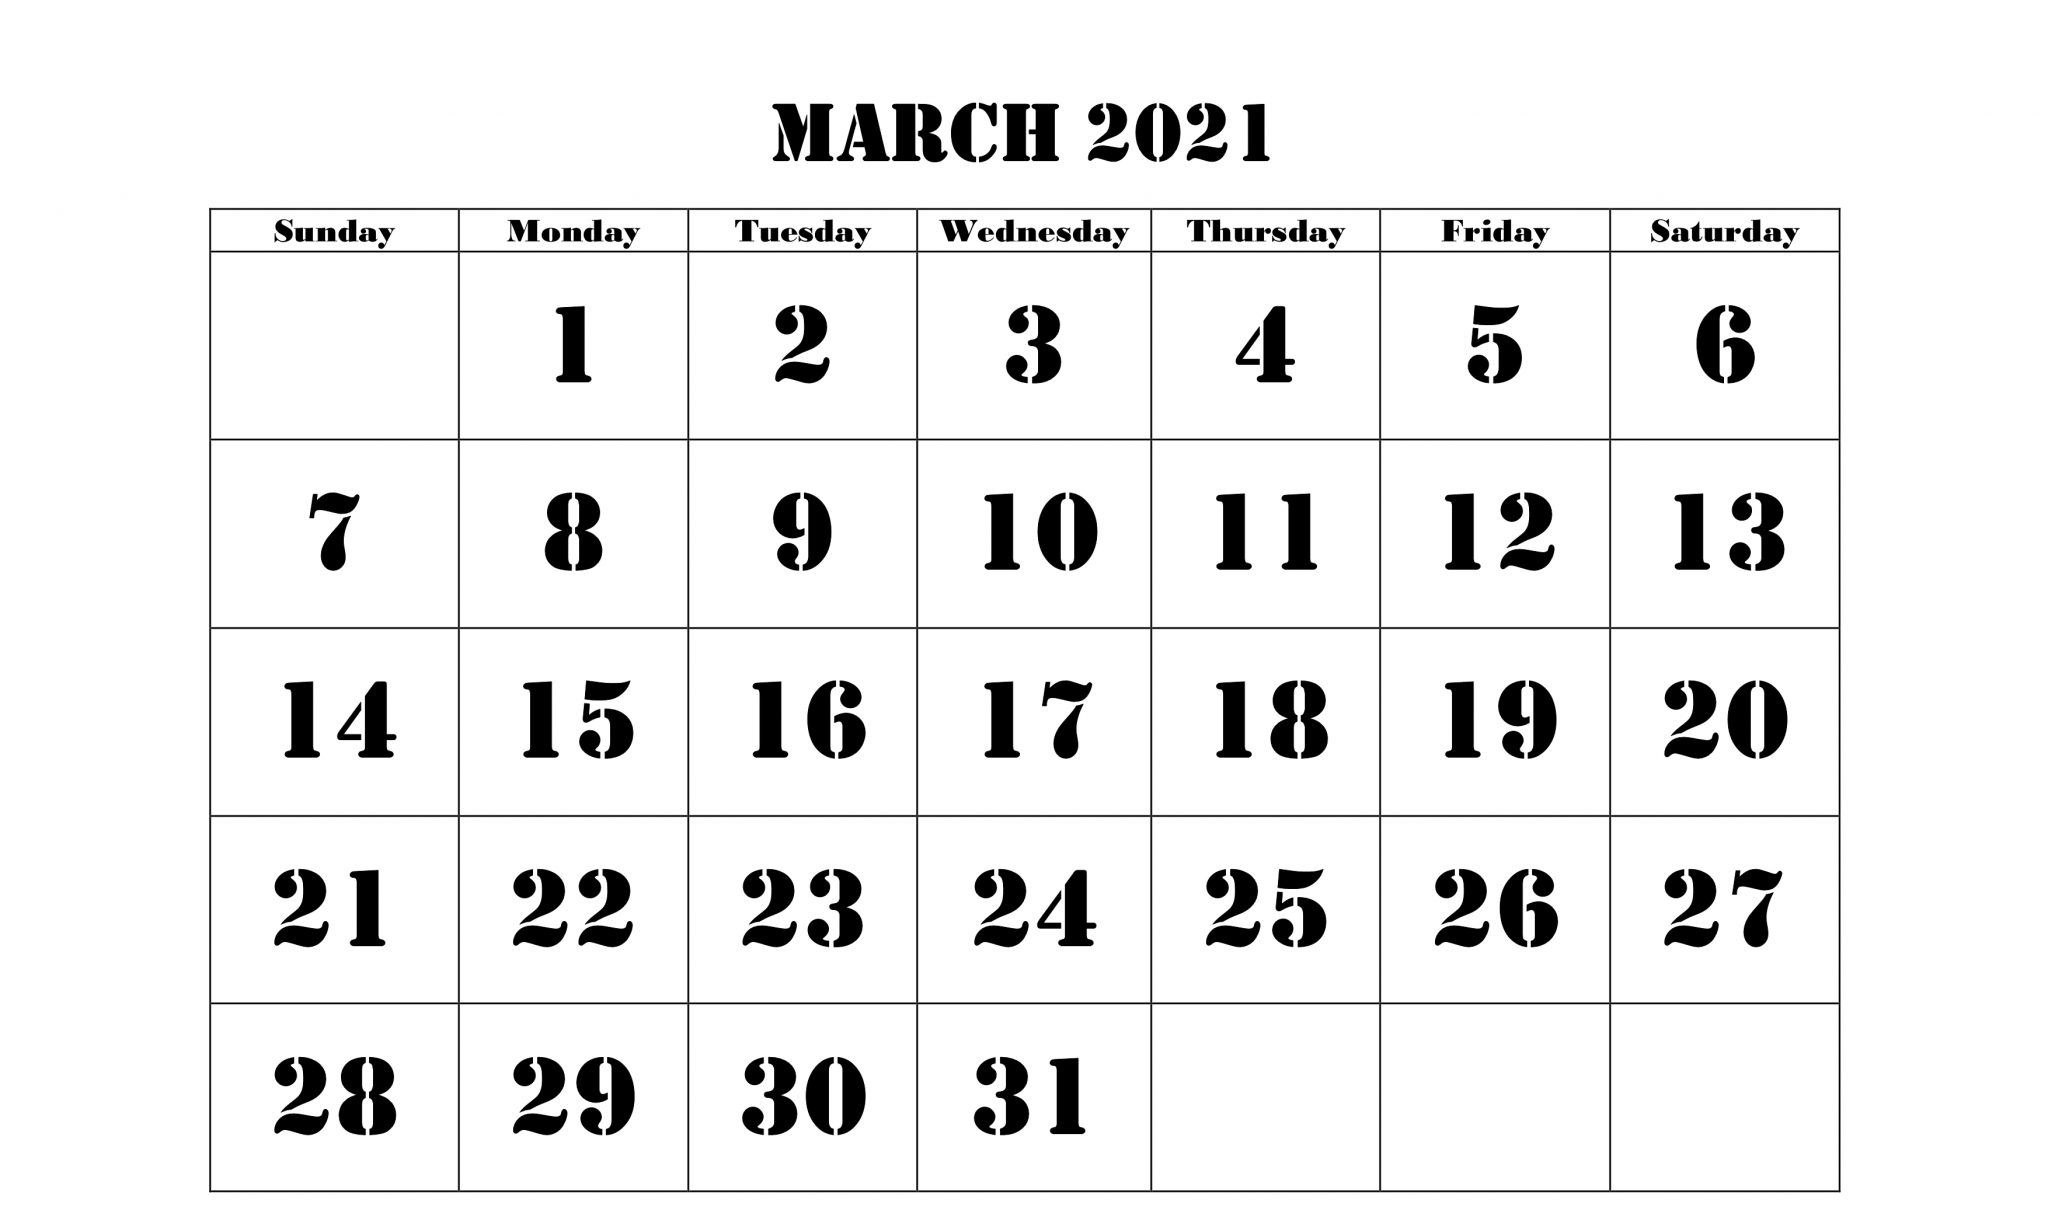 20+ Calendar 2021 Greece - Free Download Printable Calendar November 2020 To March 2021